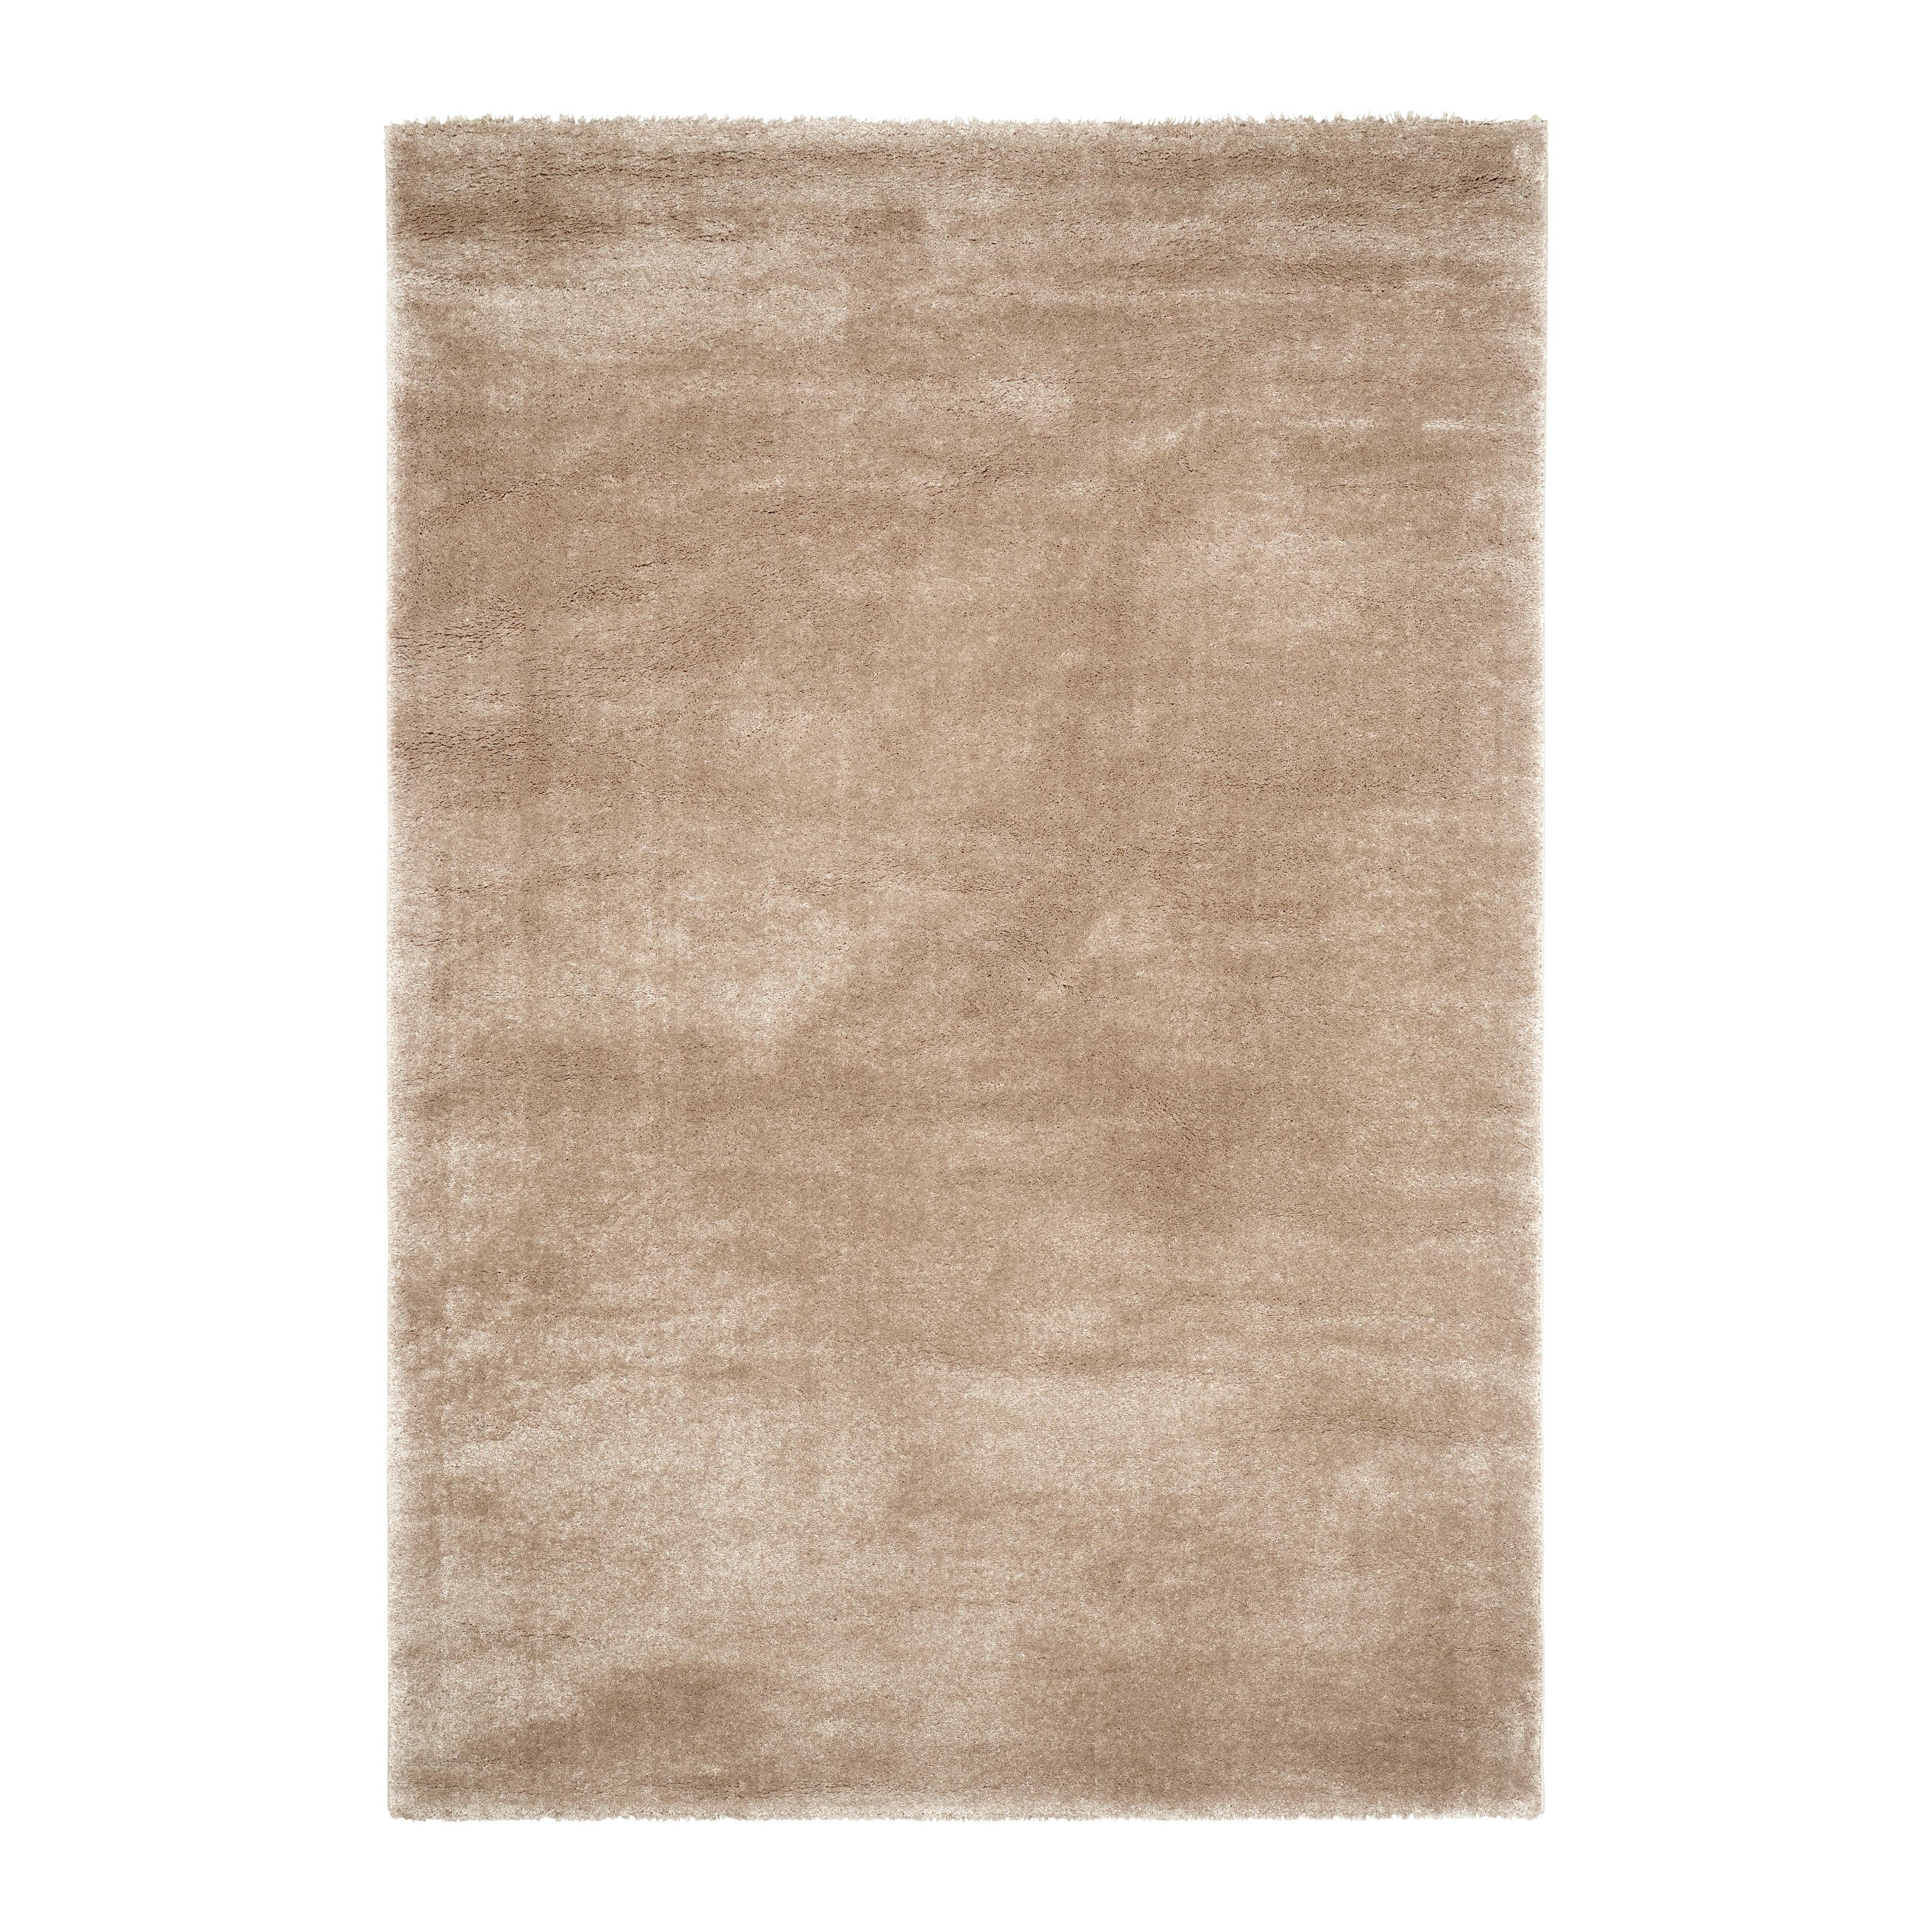 Szőtt Szőnyeg Rubin - Bézs, Natur, Textil (120/170cm) - Modern Living